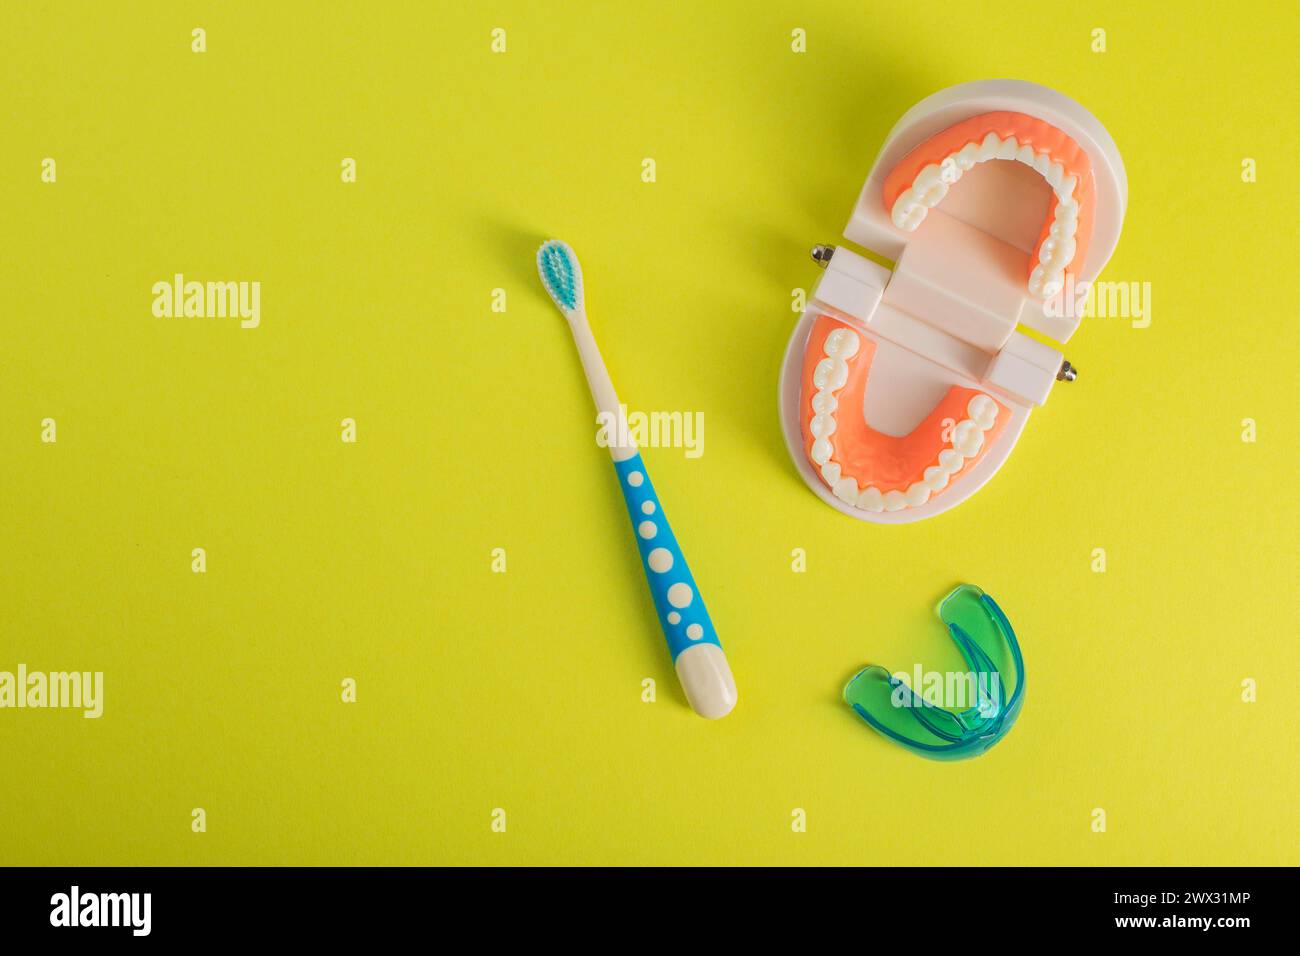 Spazzolino per bambini con setole morbide su sfondo giallo accanto a un modello di mascella dentale. Il concetto di cura e igiene per la cavità orale Foto Stock